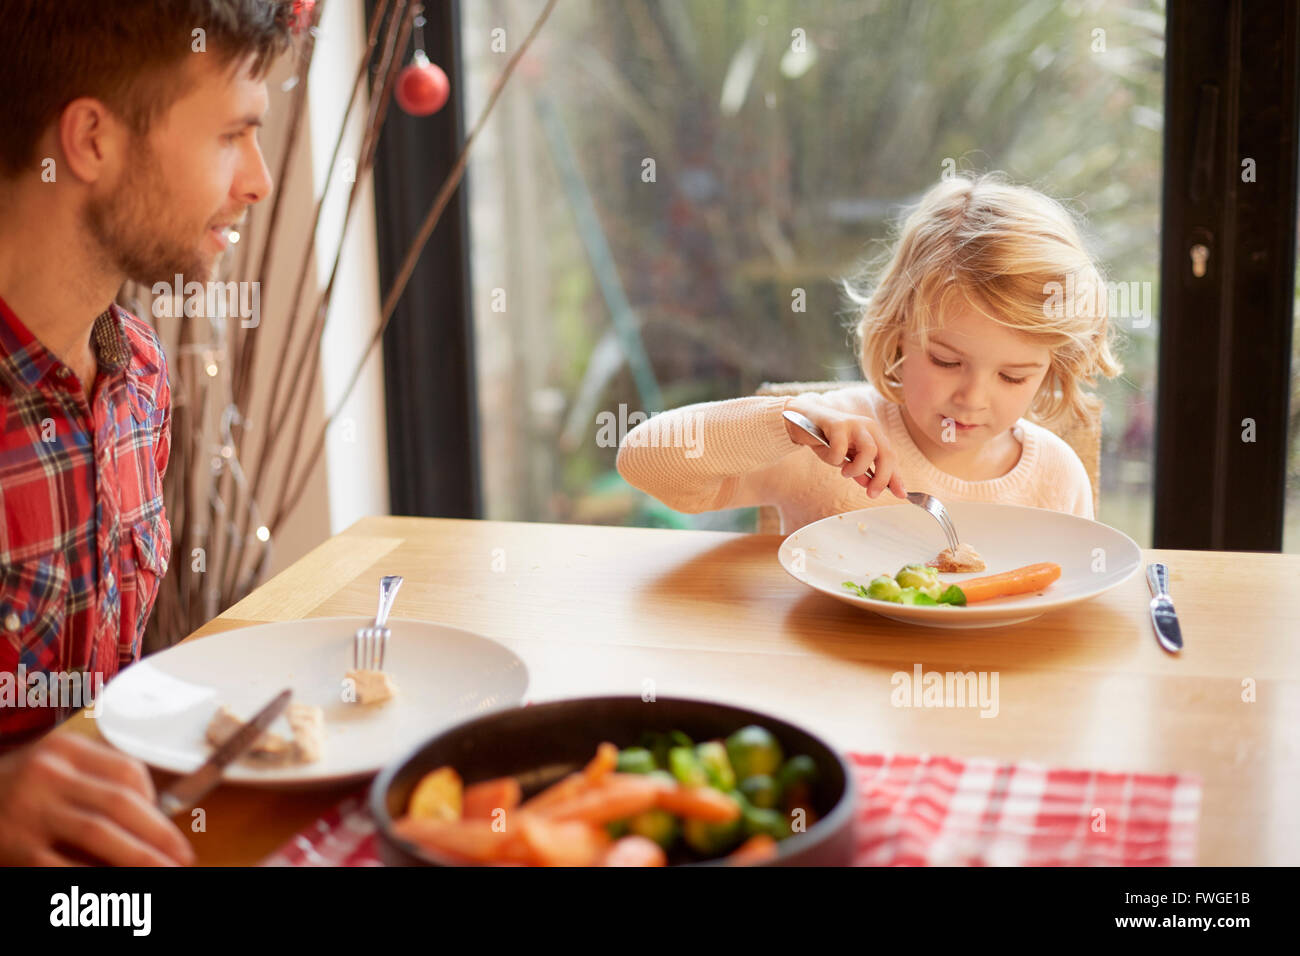 Ein Kind und ein Mann sitzt an einem Tisch eine gekochte Mahlzeit. Stockfoto